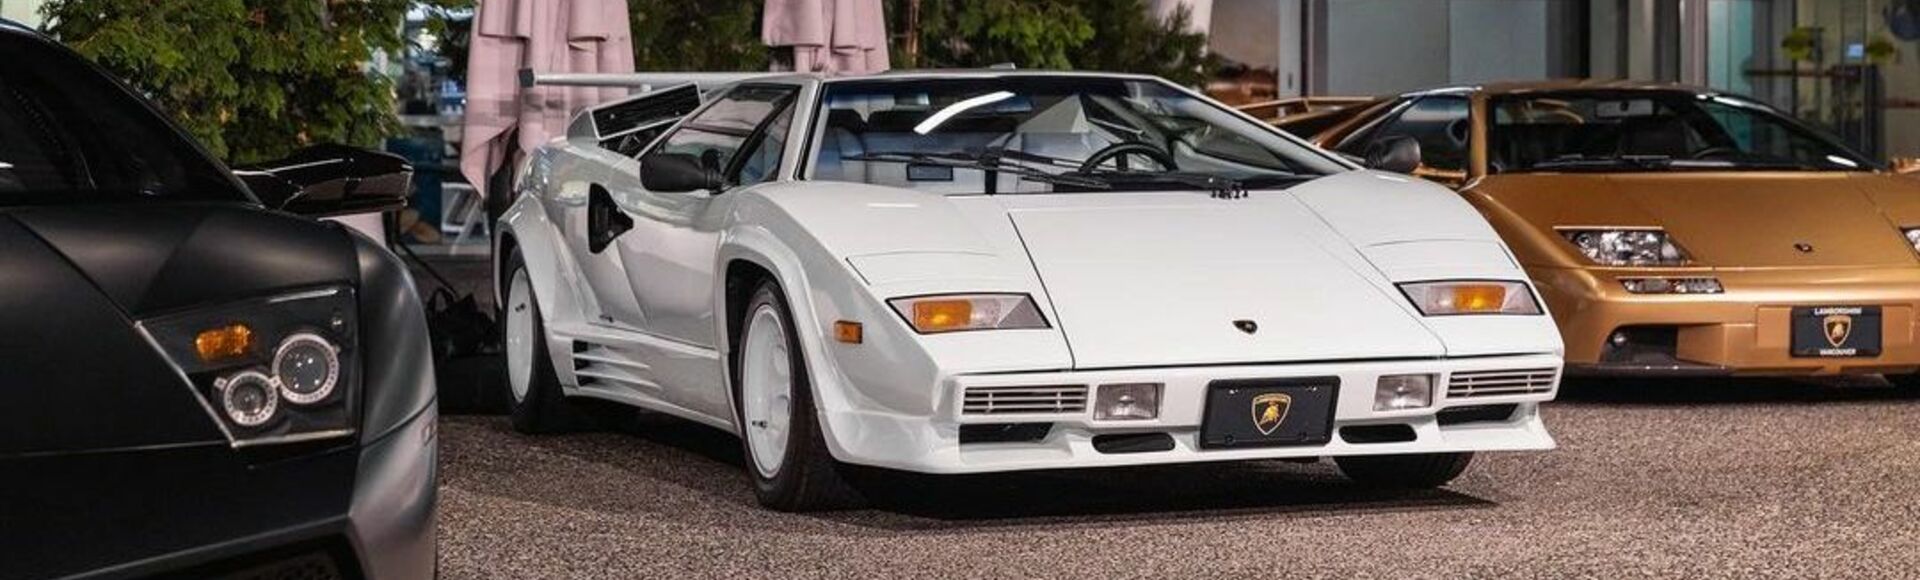 Vancouver Lamborghini Collection